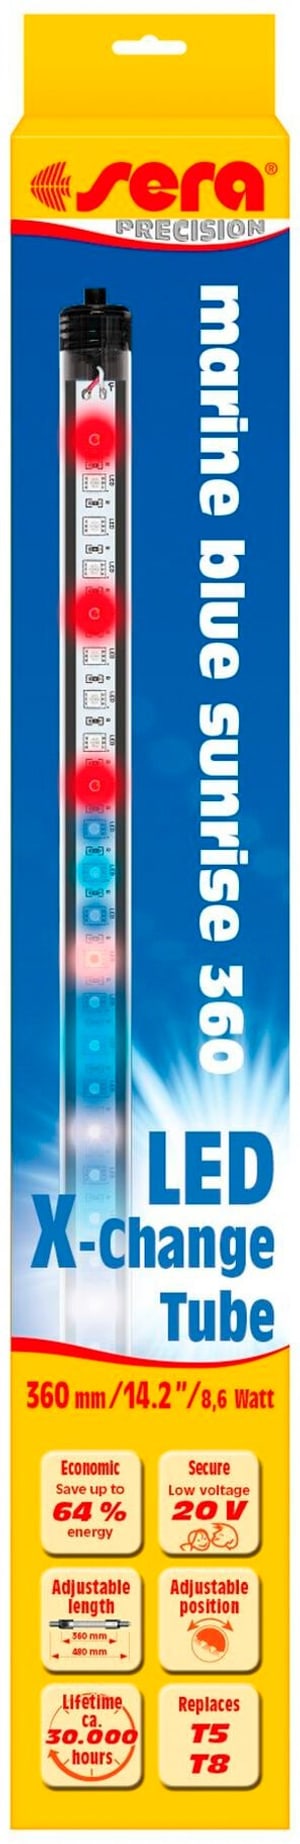 Leuchtmittel LED X-Change Tube MBS, 360 mm